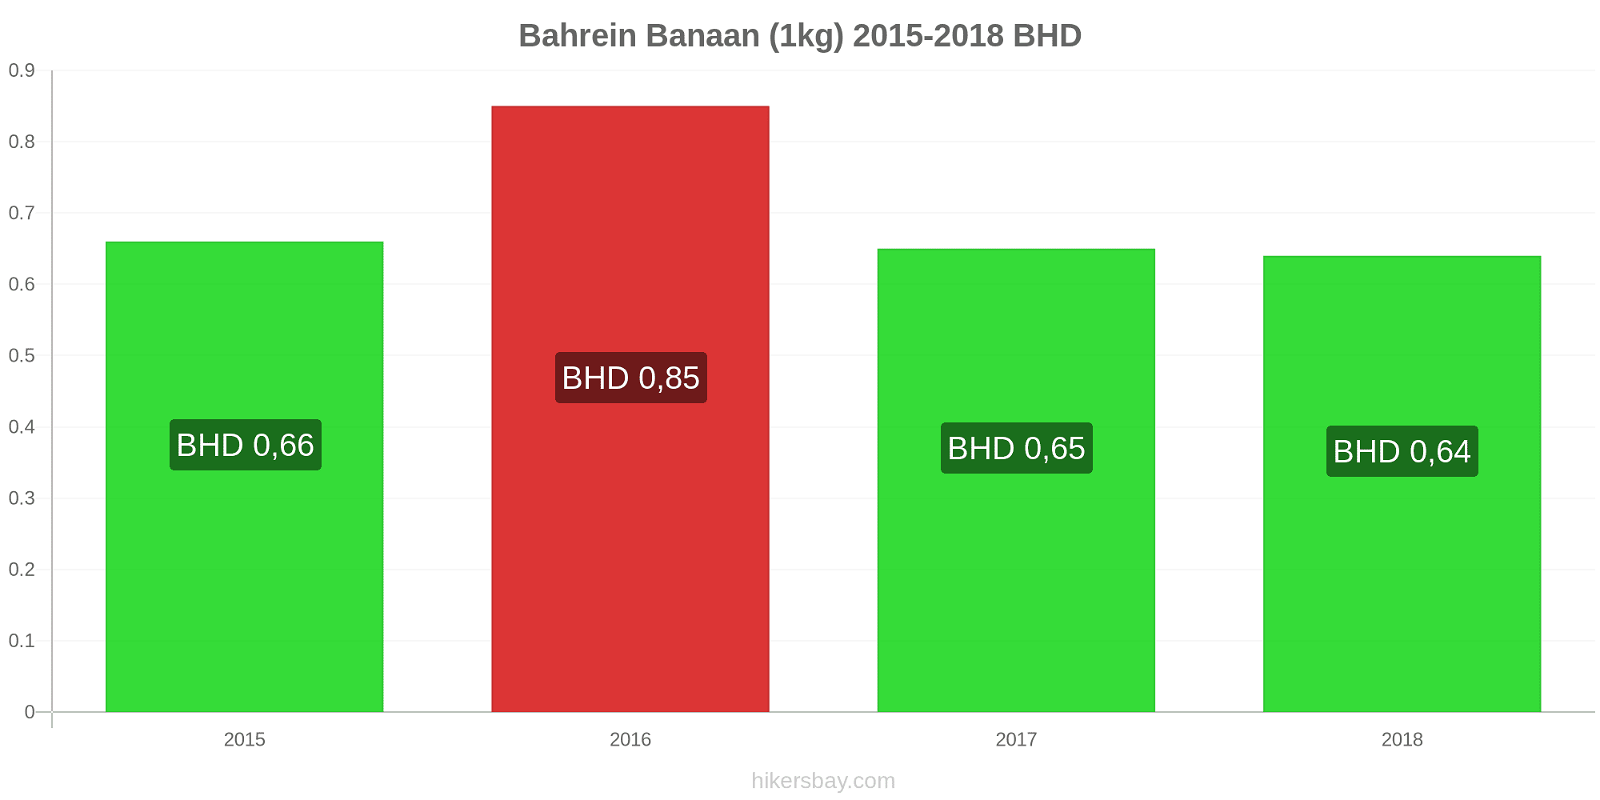 Bahrein prijswijzigingen Bananen (1kg) hikersbay.com